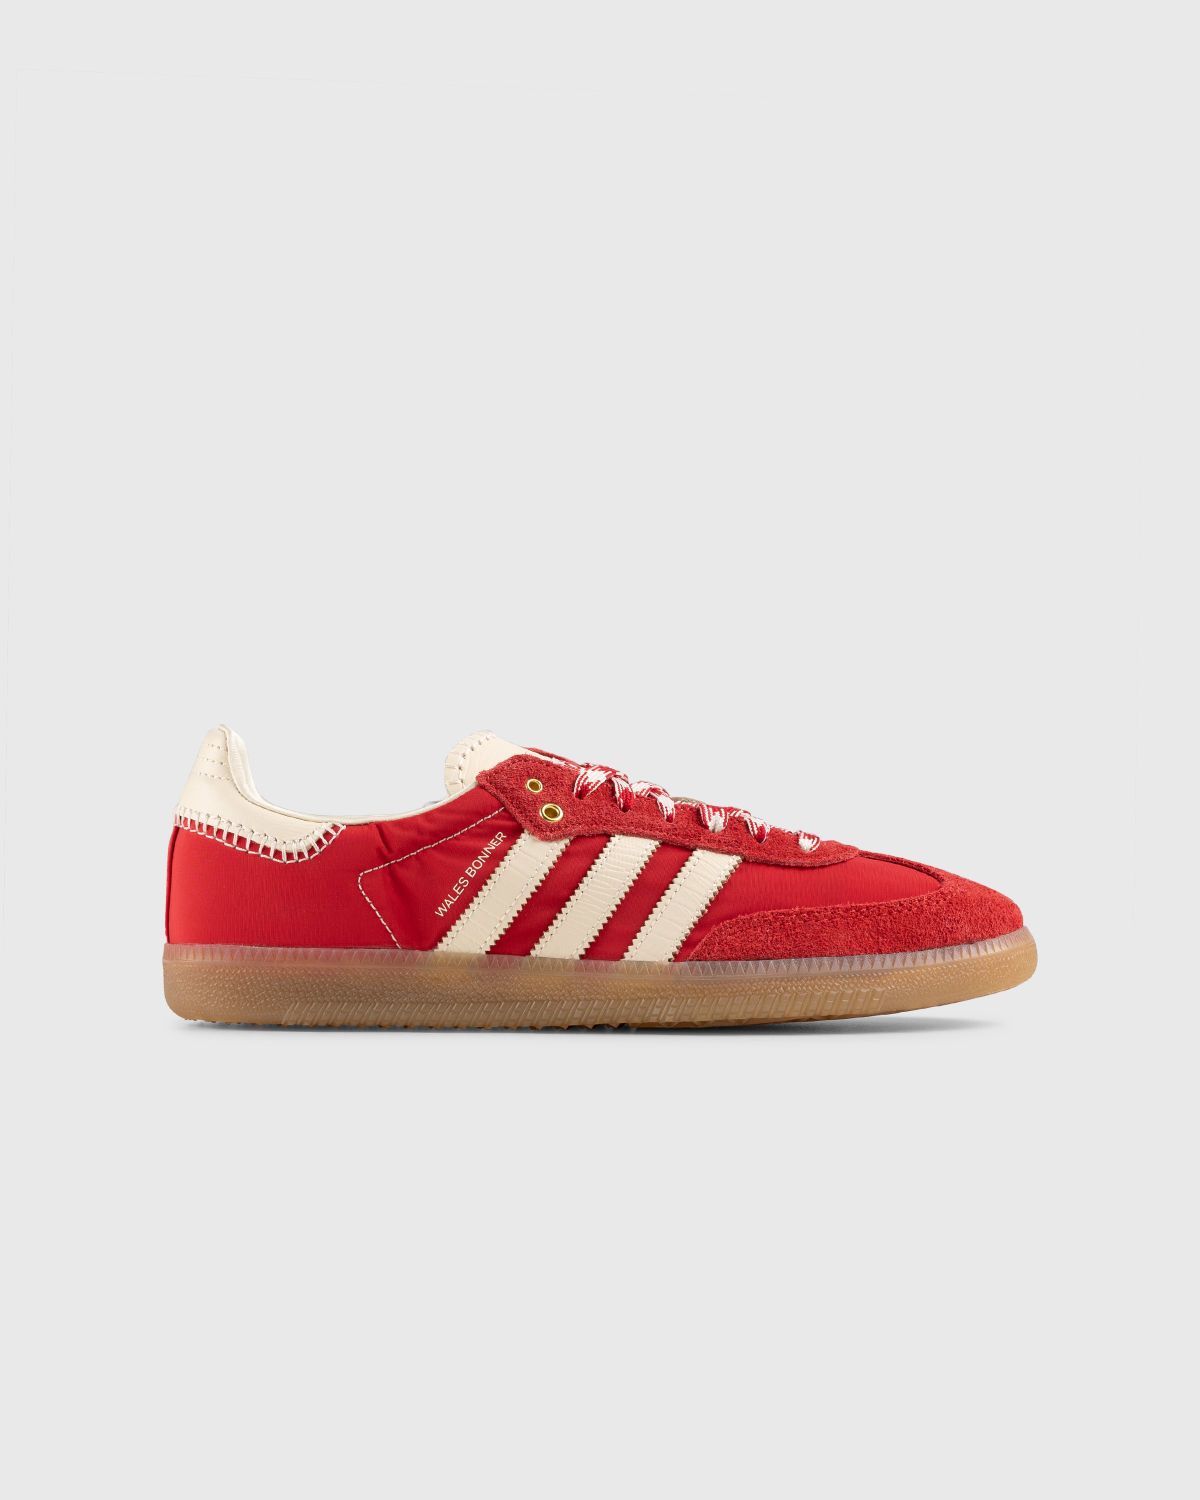 Adidas x Wales Bonner – WB Samba Scarlet/Ecru Tint/Scarlet - Sneakers - Red - Image 1